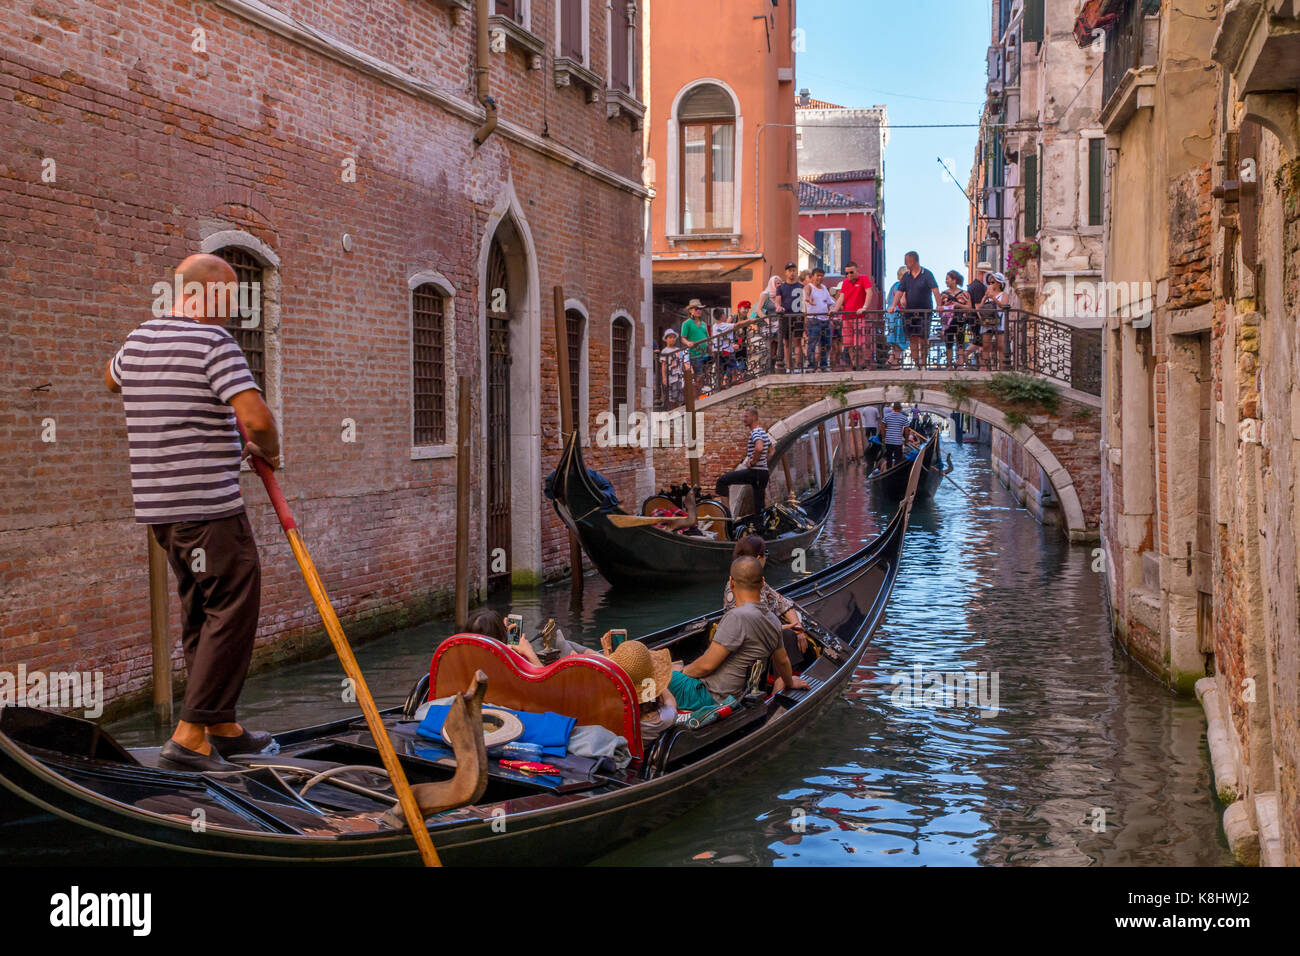 Venice canals and gondola, Italy Stock Photo